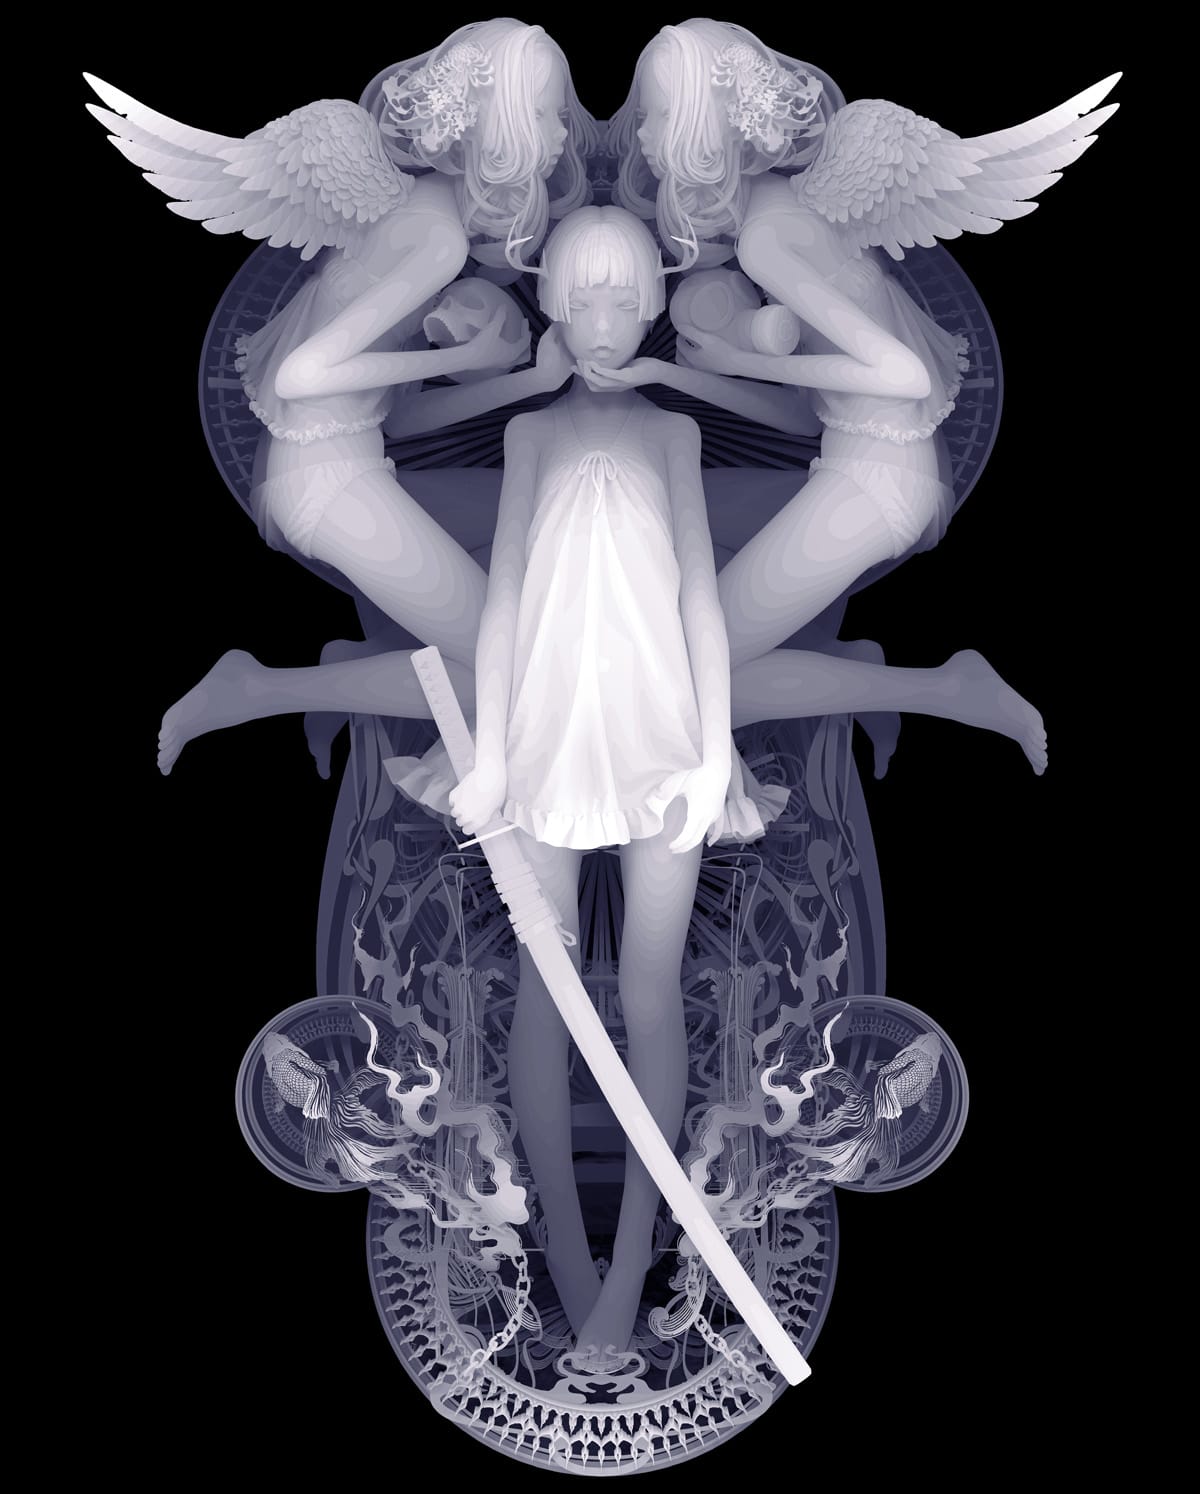 Autour d'une femme qui tient un sabre volent deux anges qui tiennent des têtes de mort.